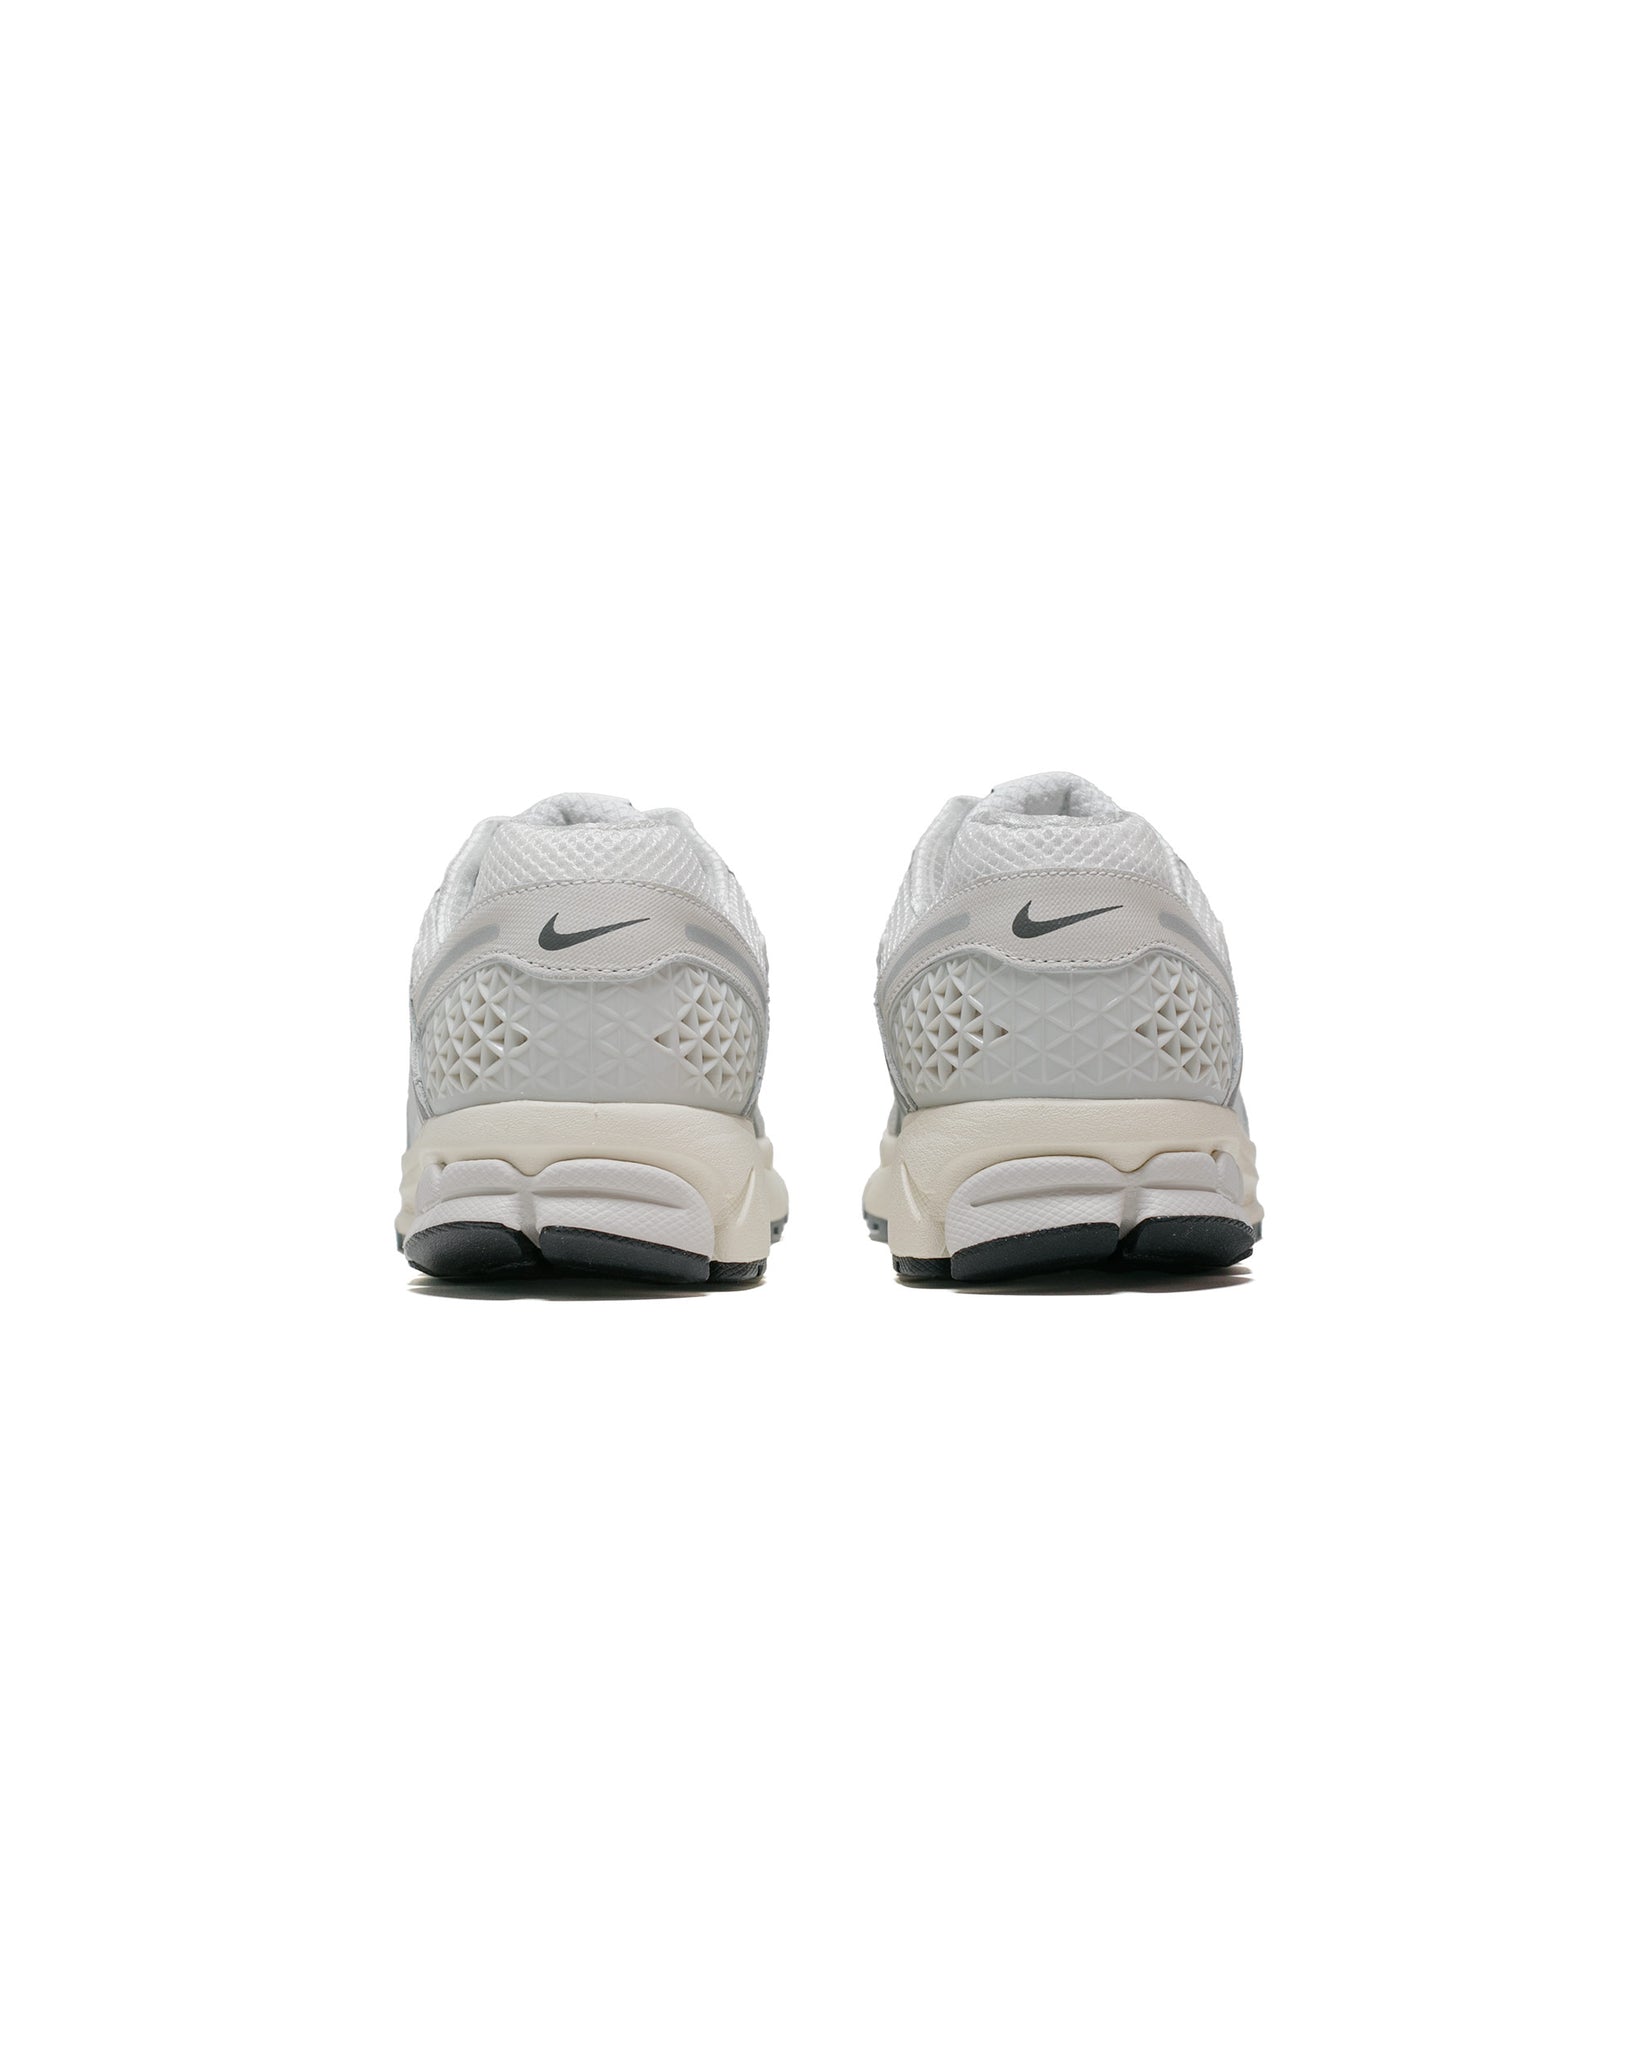 Nike Zoom Vomero 5 SE Platinum Tint/Iron Grey/Photon Dust back